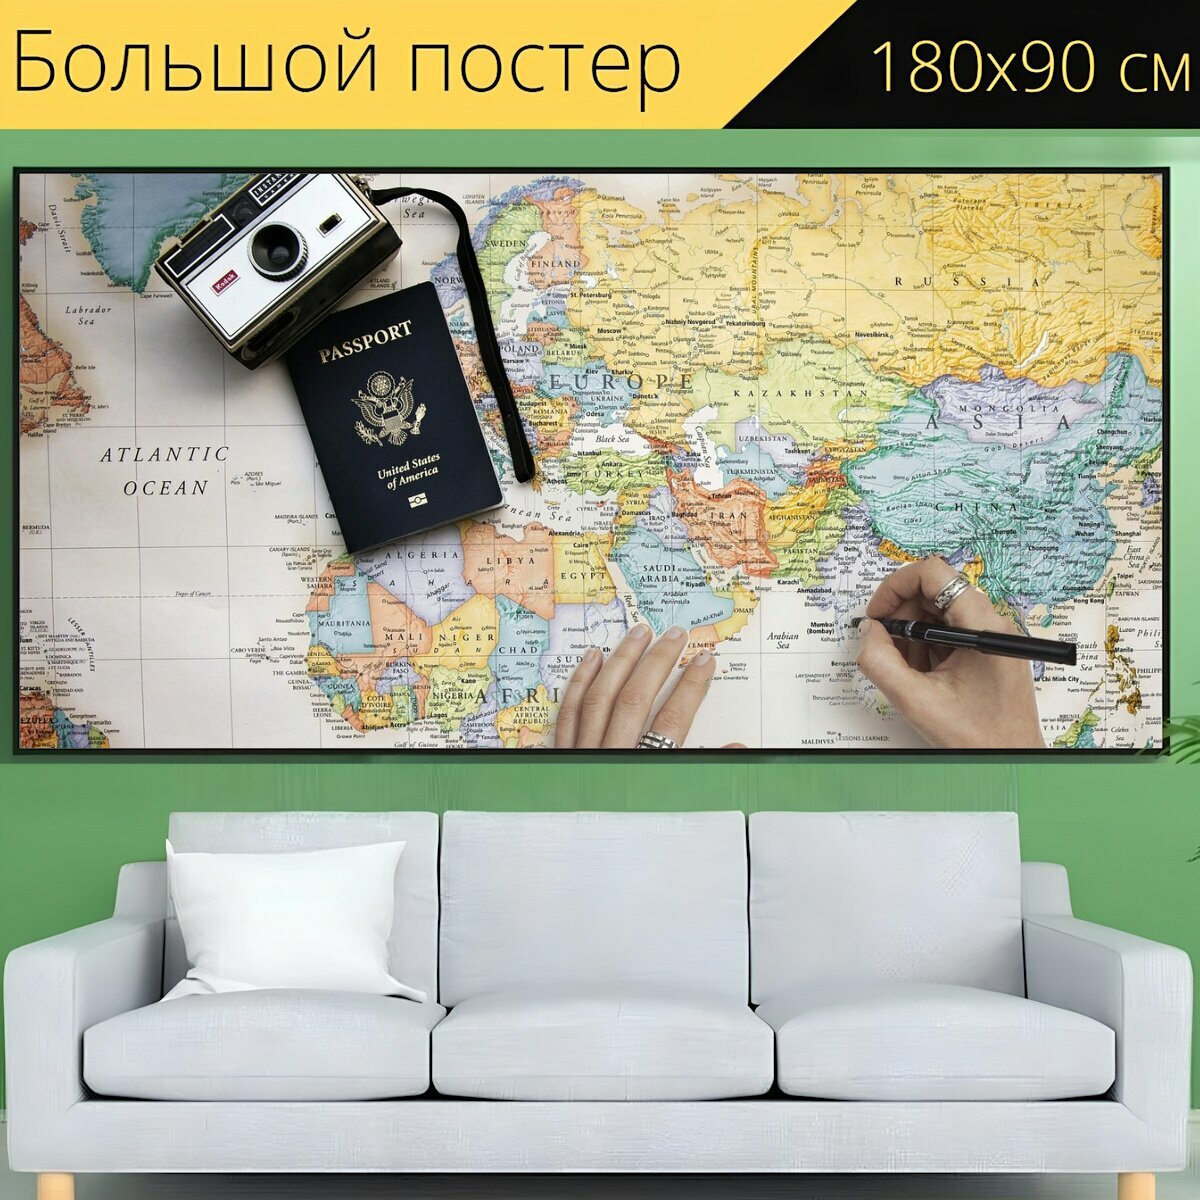 Большой постер "Карта, путешествовать, карта путешествия" 180 x 90 см. для интерьера